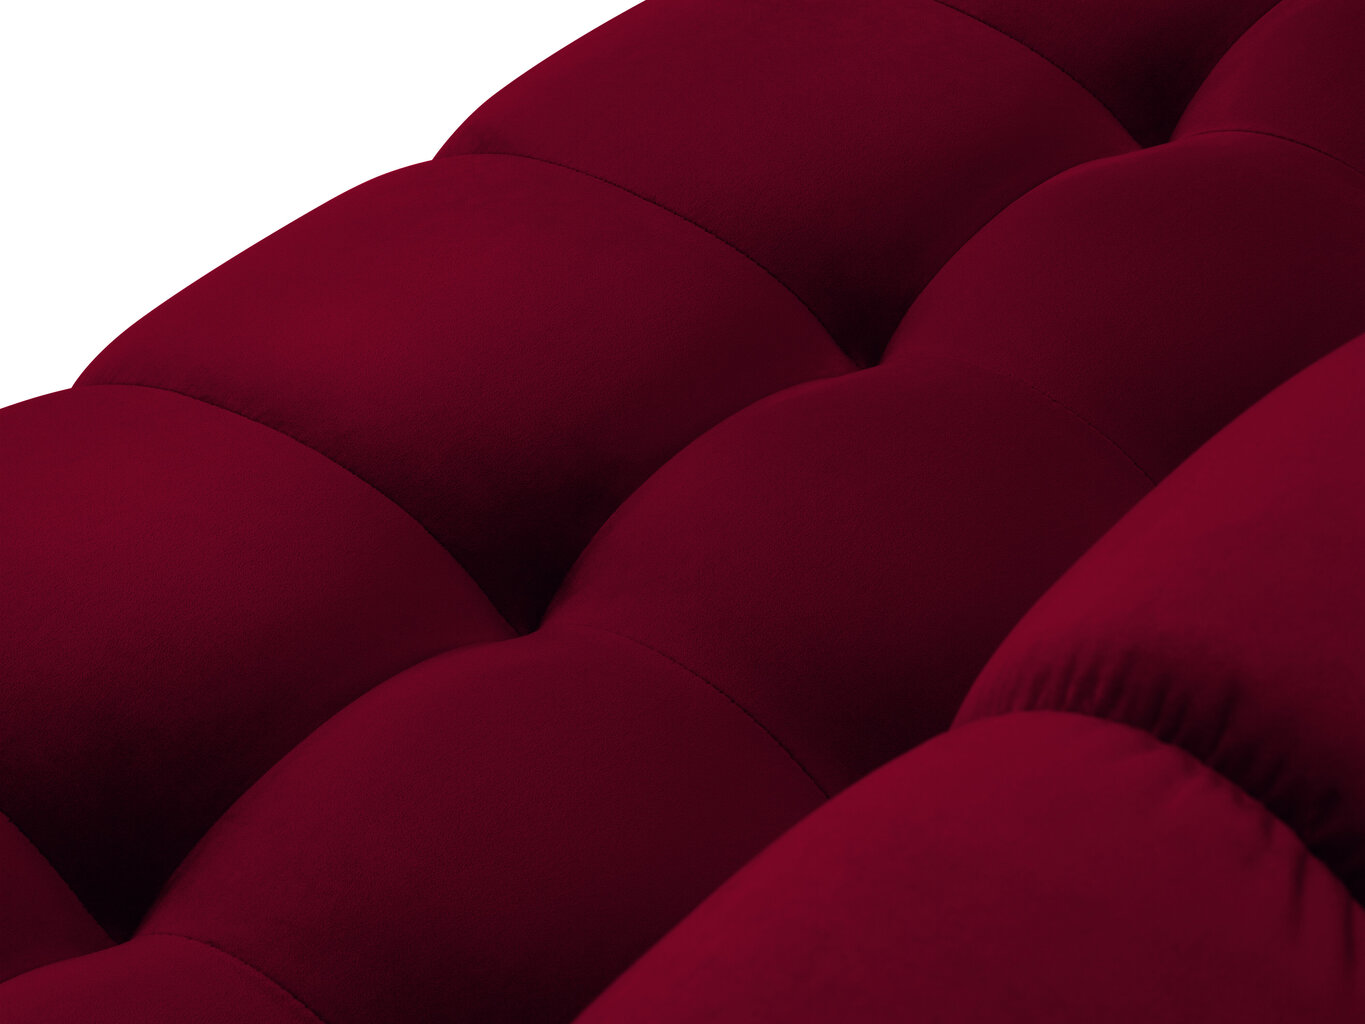 Sofa Micadoni Home Mamaia 2S, raudona/juoda kaina ir informacija | Sofos | pigu.lt